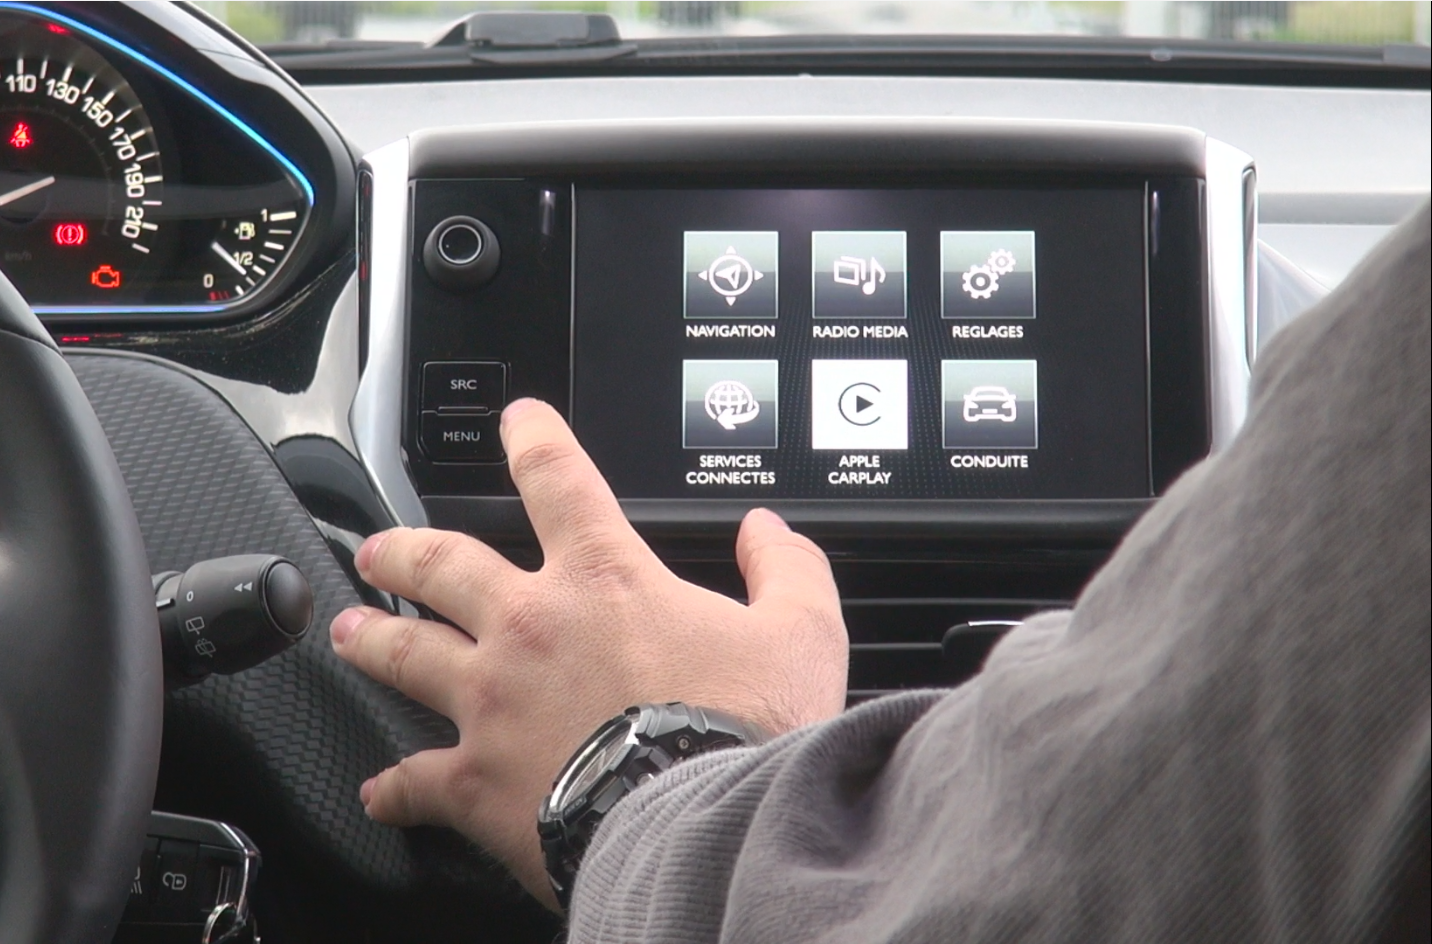 Interface Carplay & Android Auto Peugeot 208 de 2012 à 2018 commander  maintenant